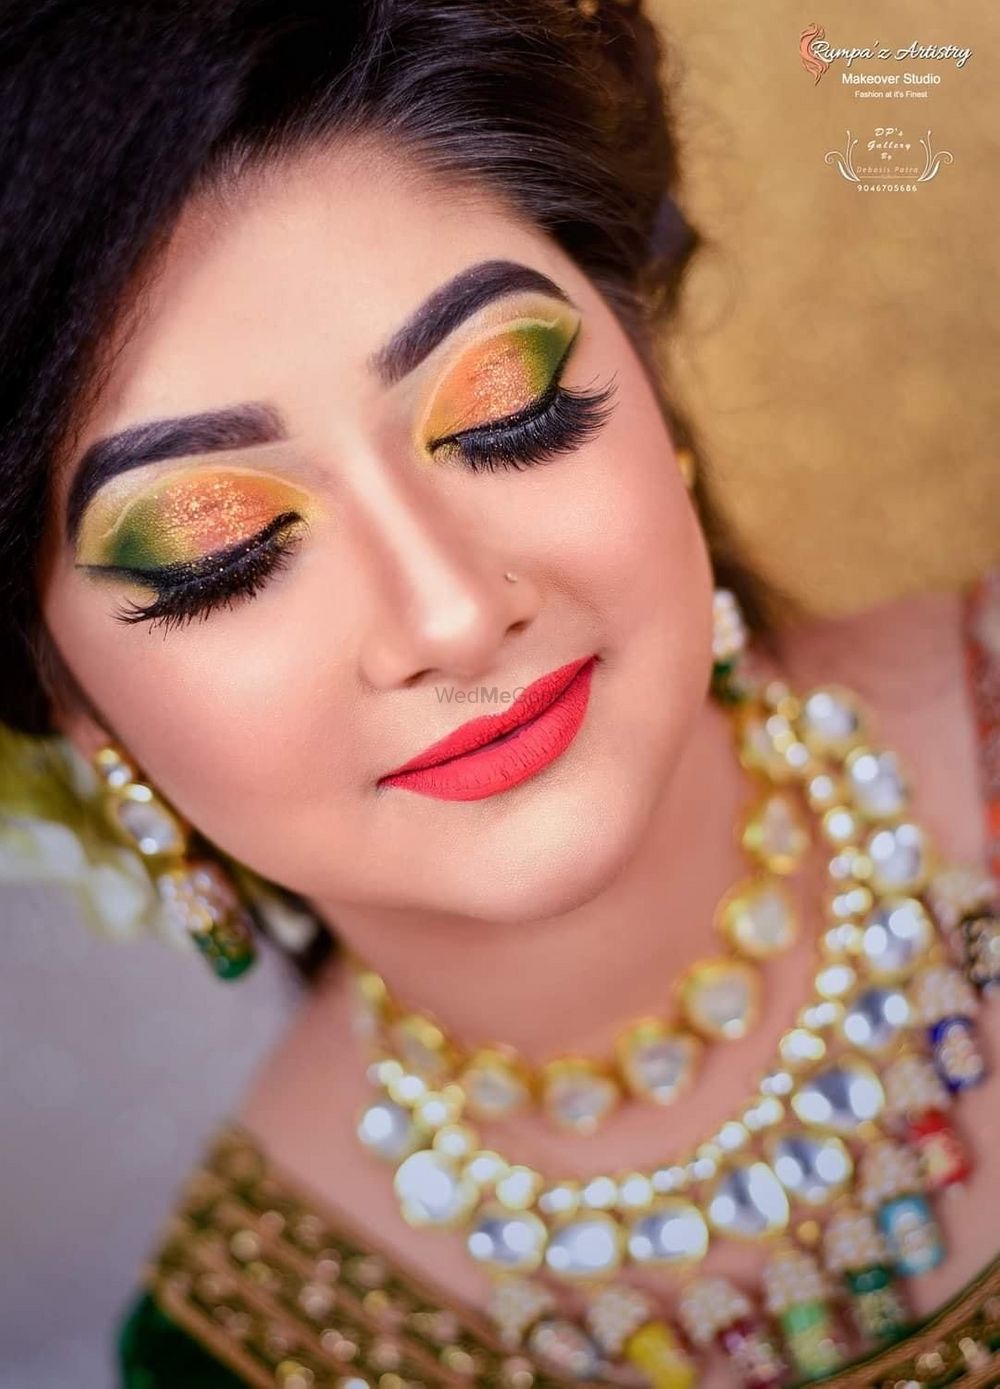 Photo From Non bengali Bridal shoot - By Bridal Makeup Artist Rumpa